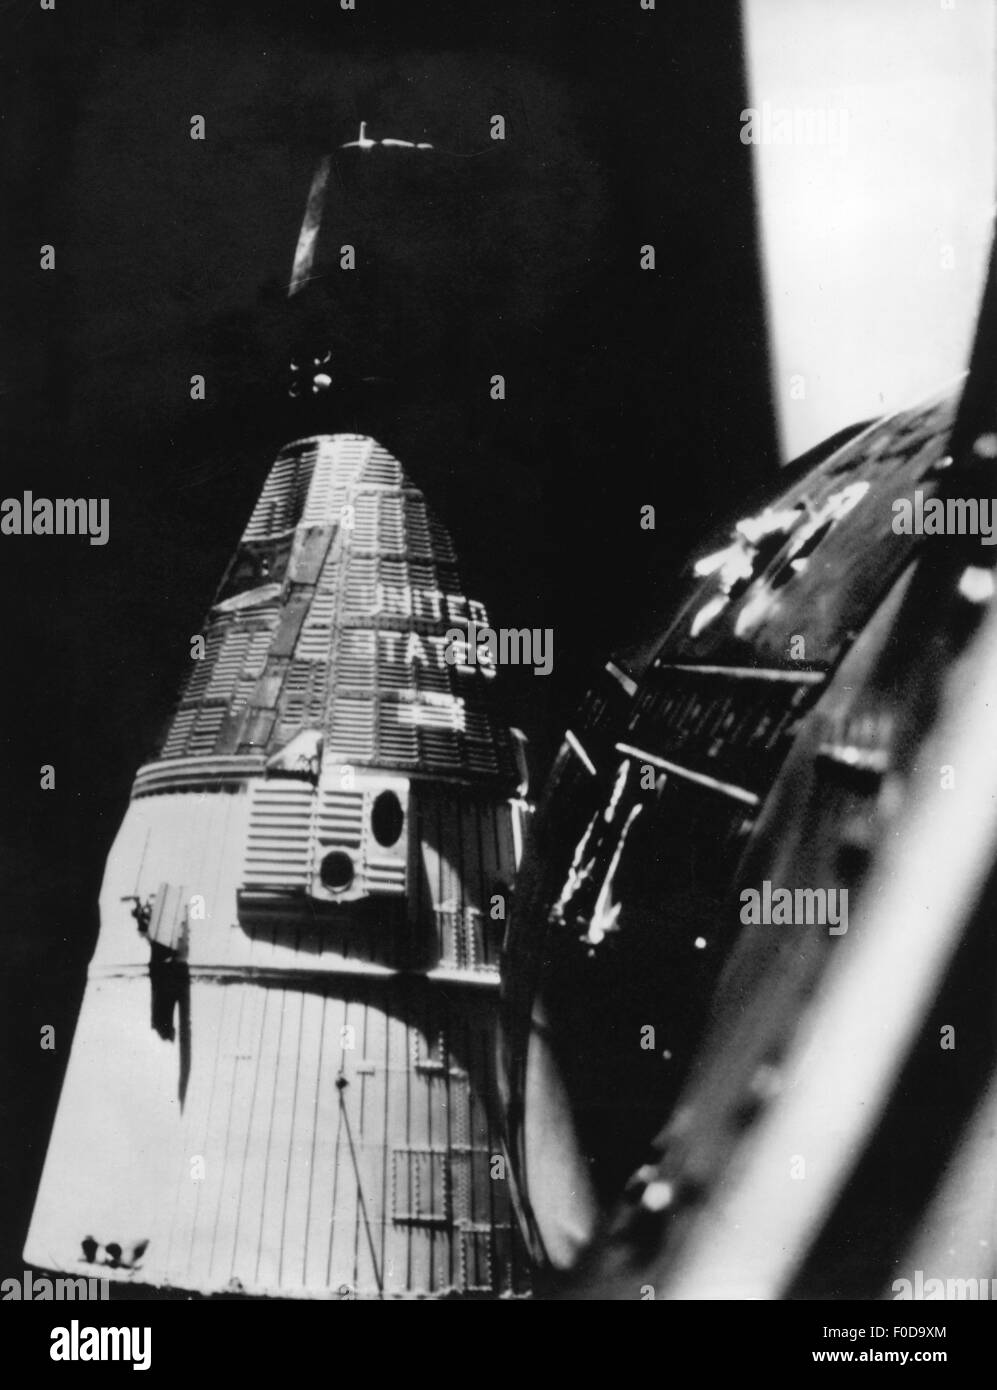 Aerospaziale / viaggio spaziale, progetto Gemini, 1963-1966, appuntamento di astronavi Gemini 6 (Walter M. Schirra e Thomas P. Stafford) e Gemini 7 (Frank Bormann e James A. Lovell), fotografia tratta da Gemini 6, 15.12.1965, NASA, astronave, spazio viaggiatore, astronautica capsule, volo, anni 60, veicolo spaziale, astronave, volo, universo, volo, volo, astronave, storia, volo, Storico, GT-6, 6A, GT-7, XX secolo, diritti aggiuntivi-clearences-non disponibile Foto Stock